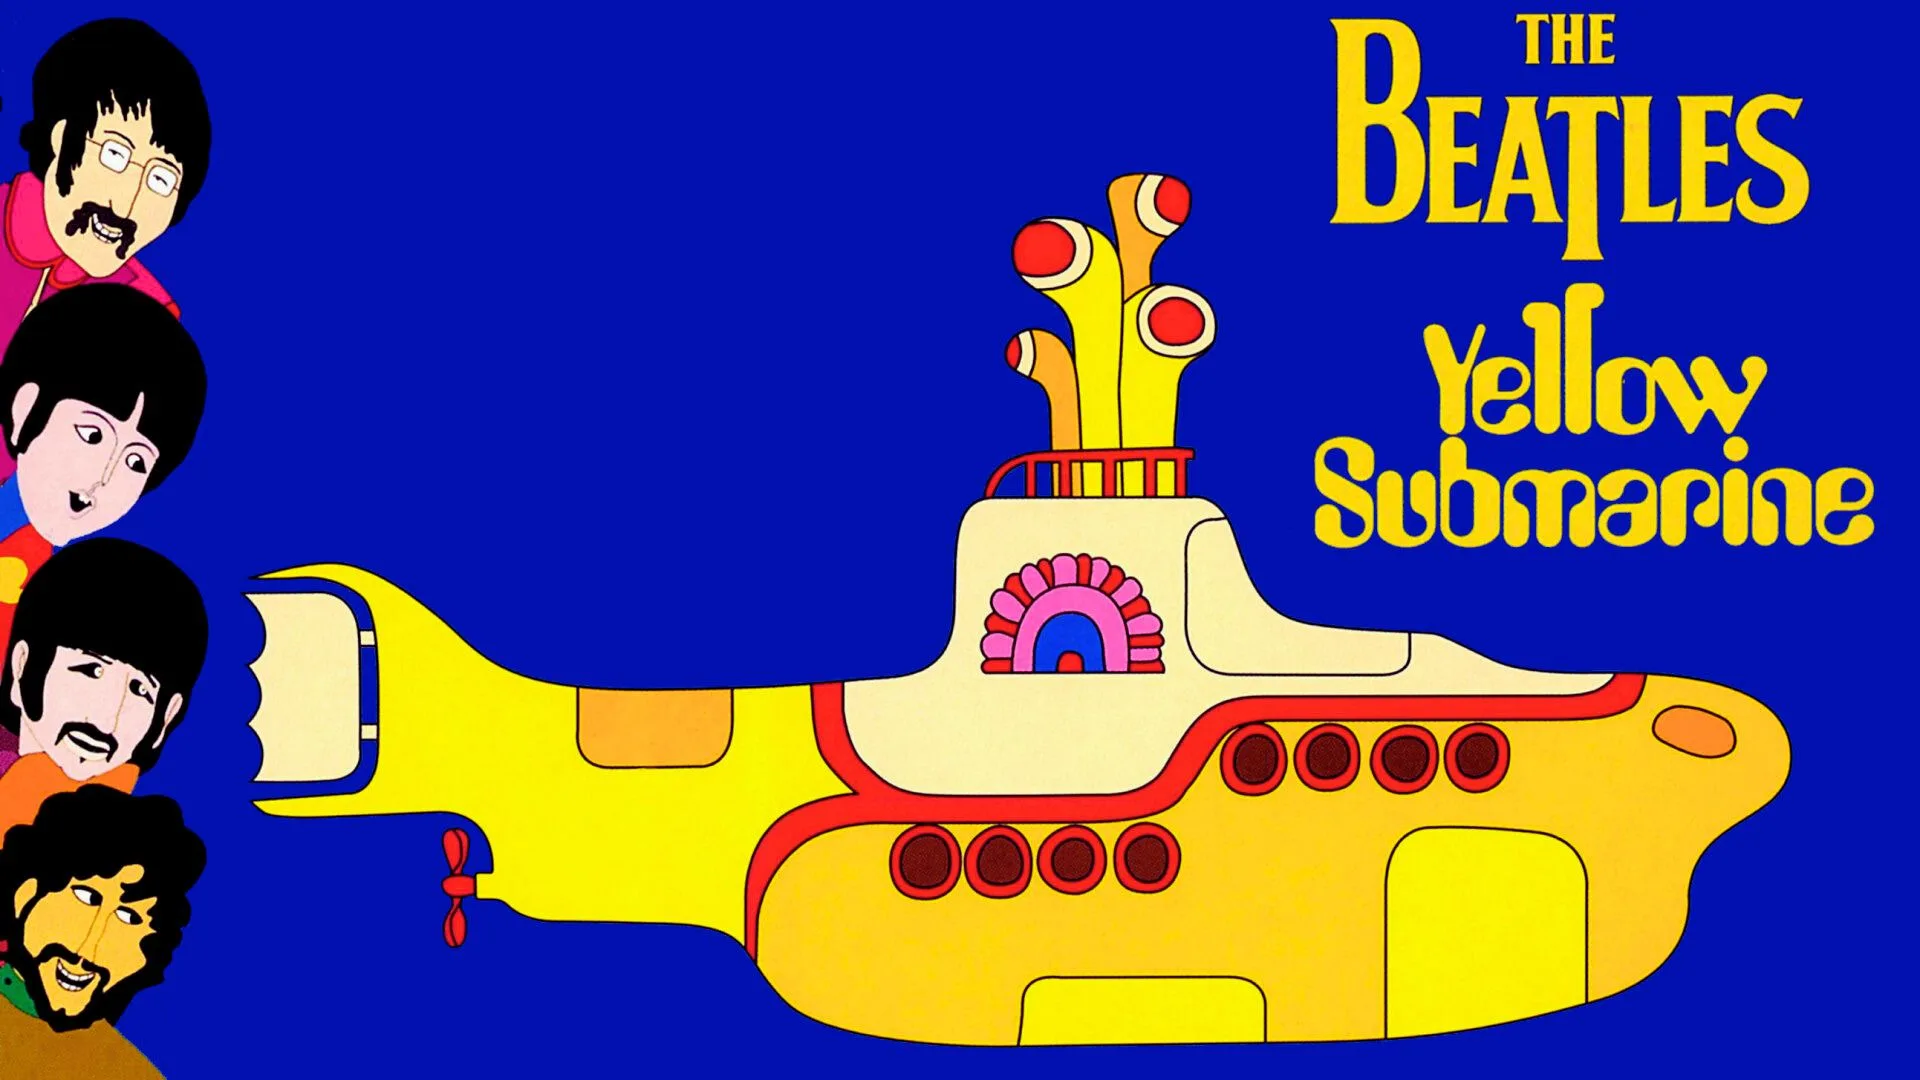 Yellow Submarine en este ranking de películas de The Beatles.